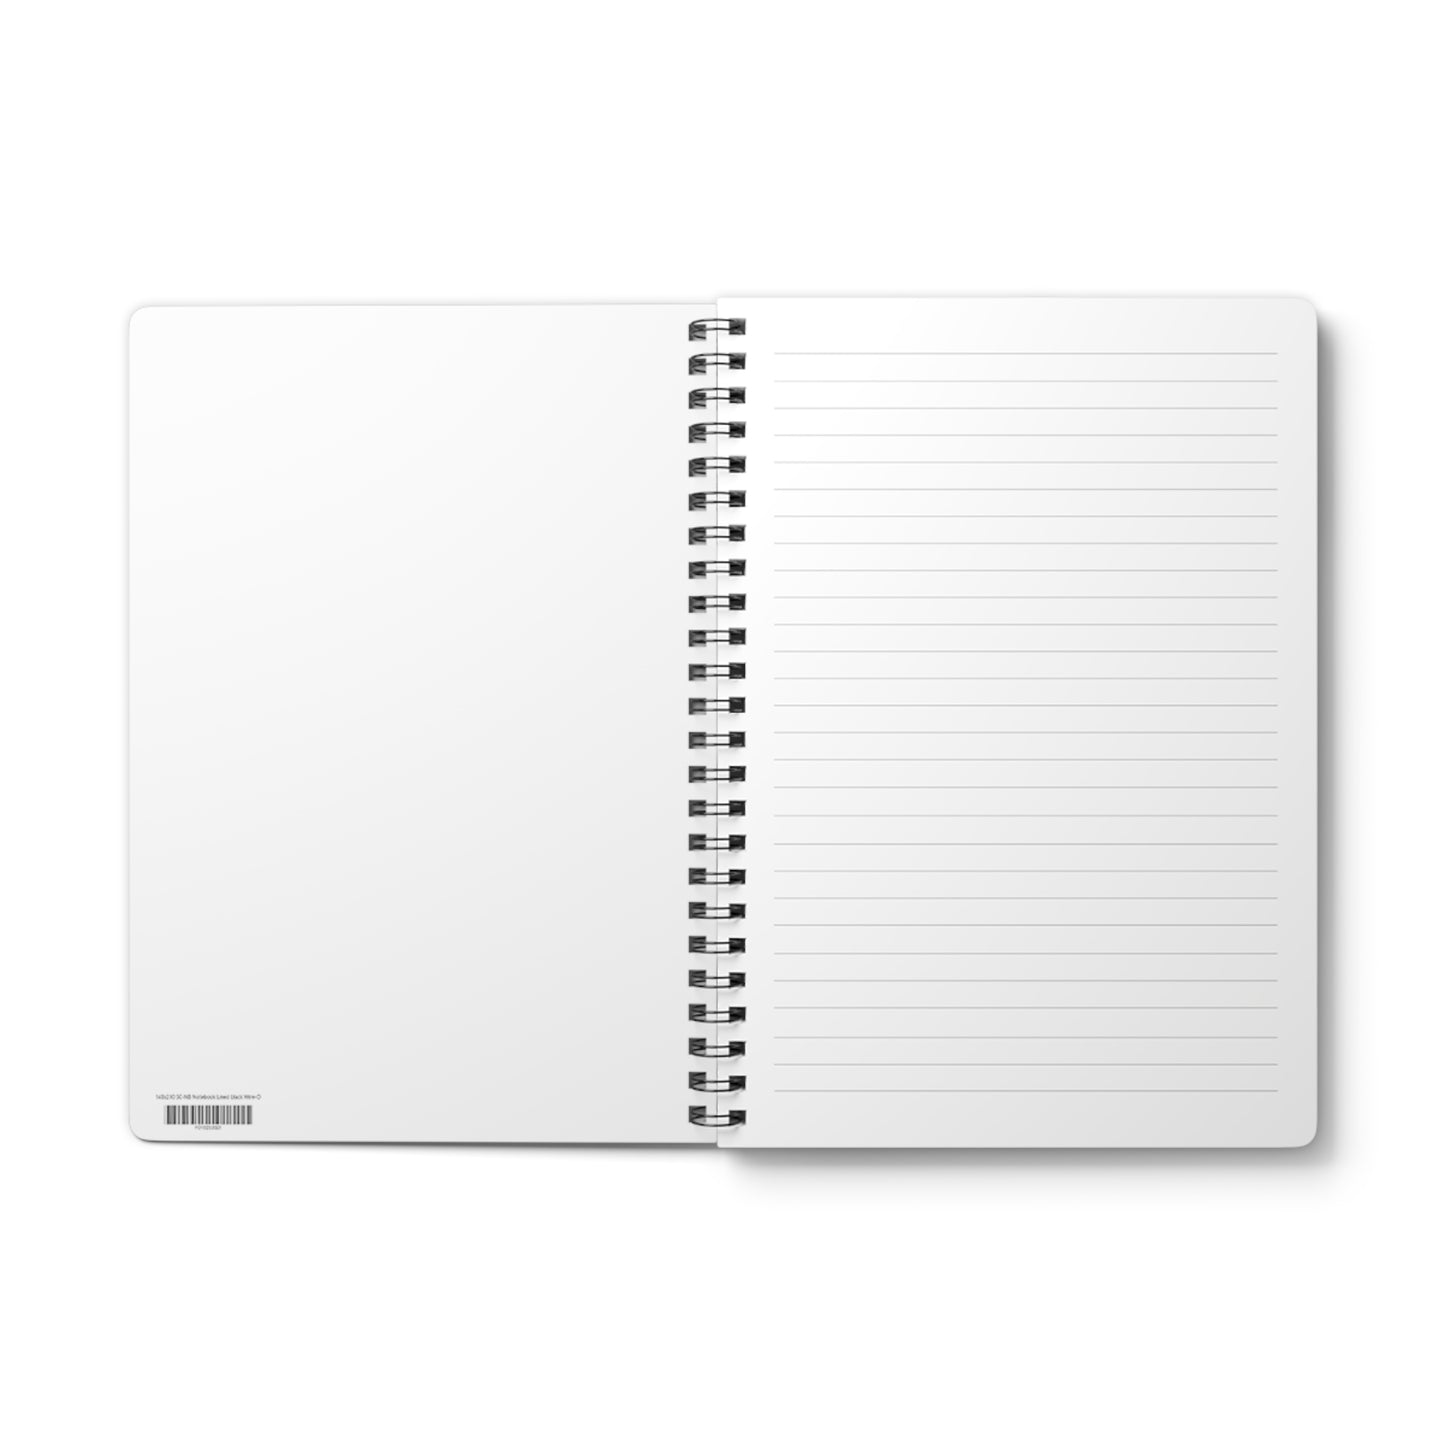 Derecho - A5 Wirebound Notebook